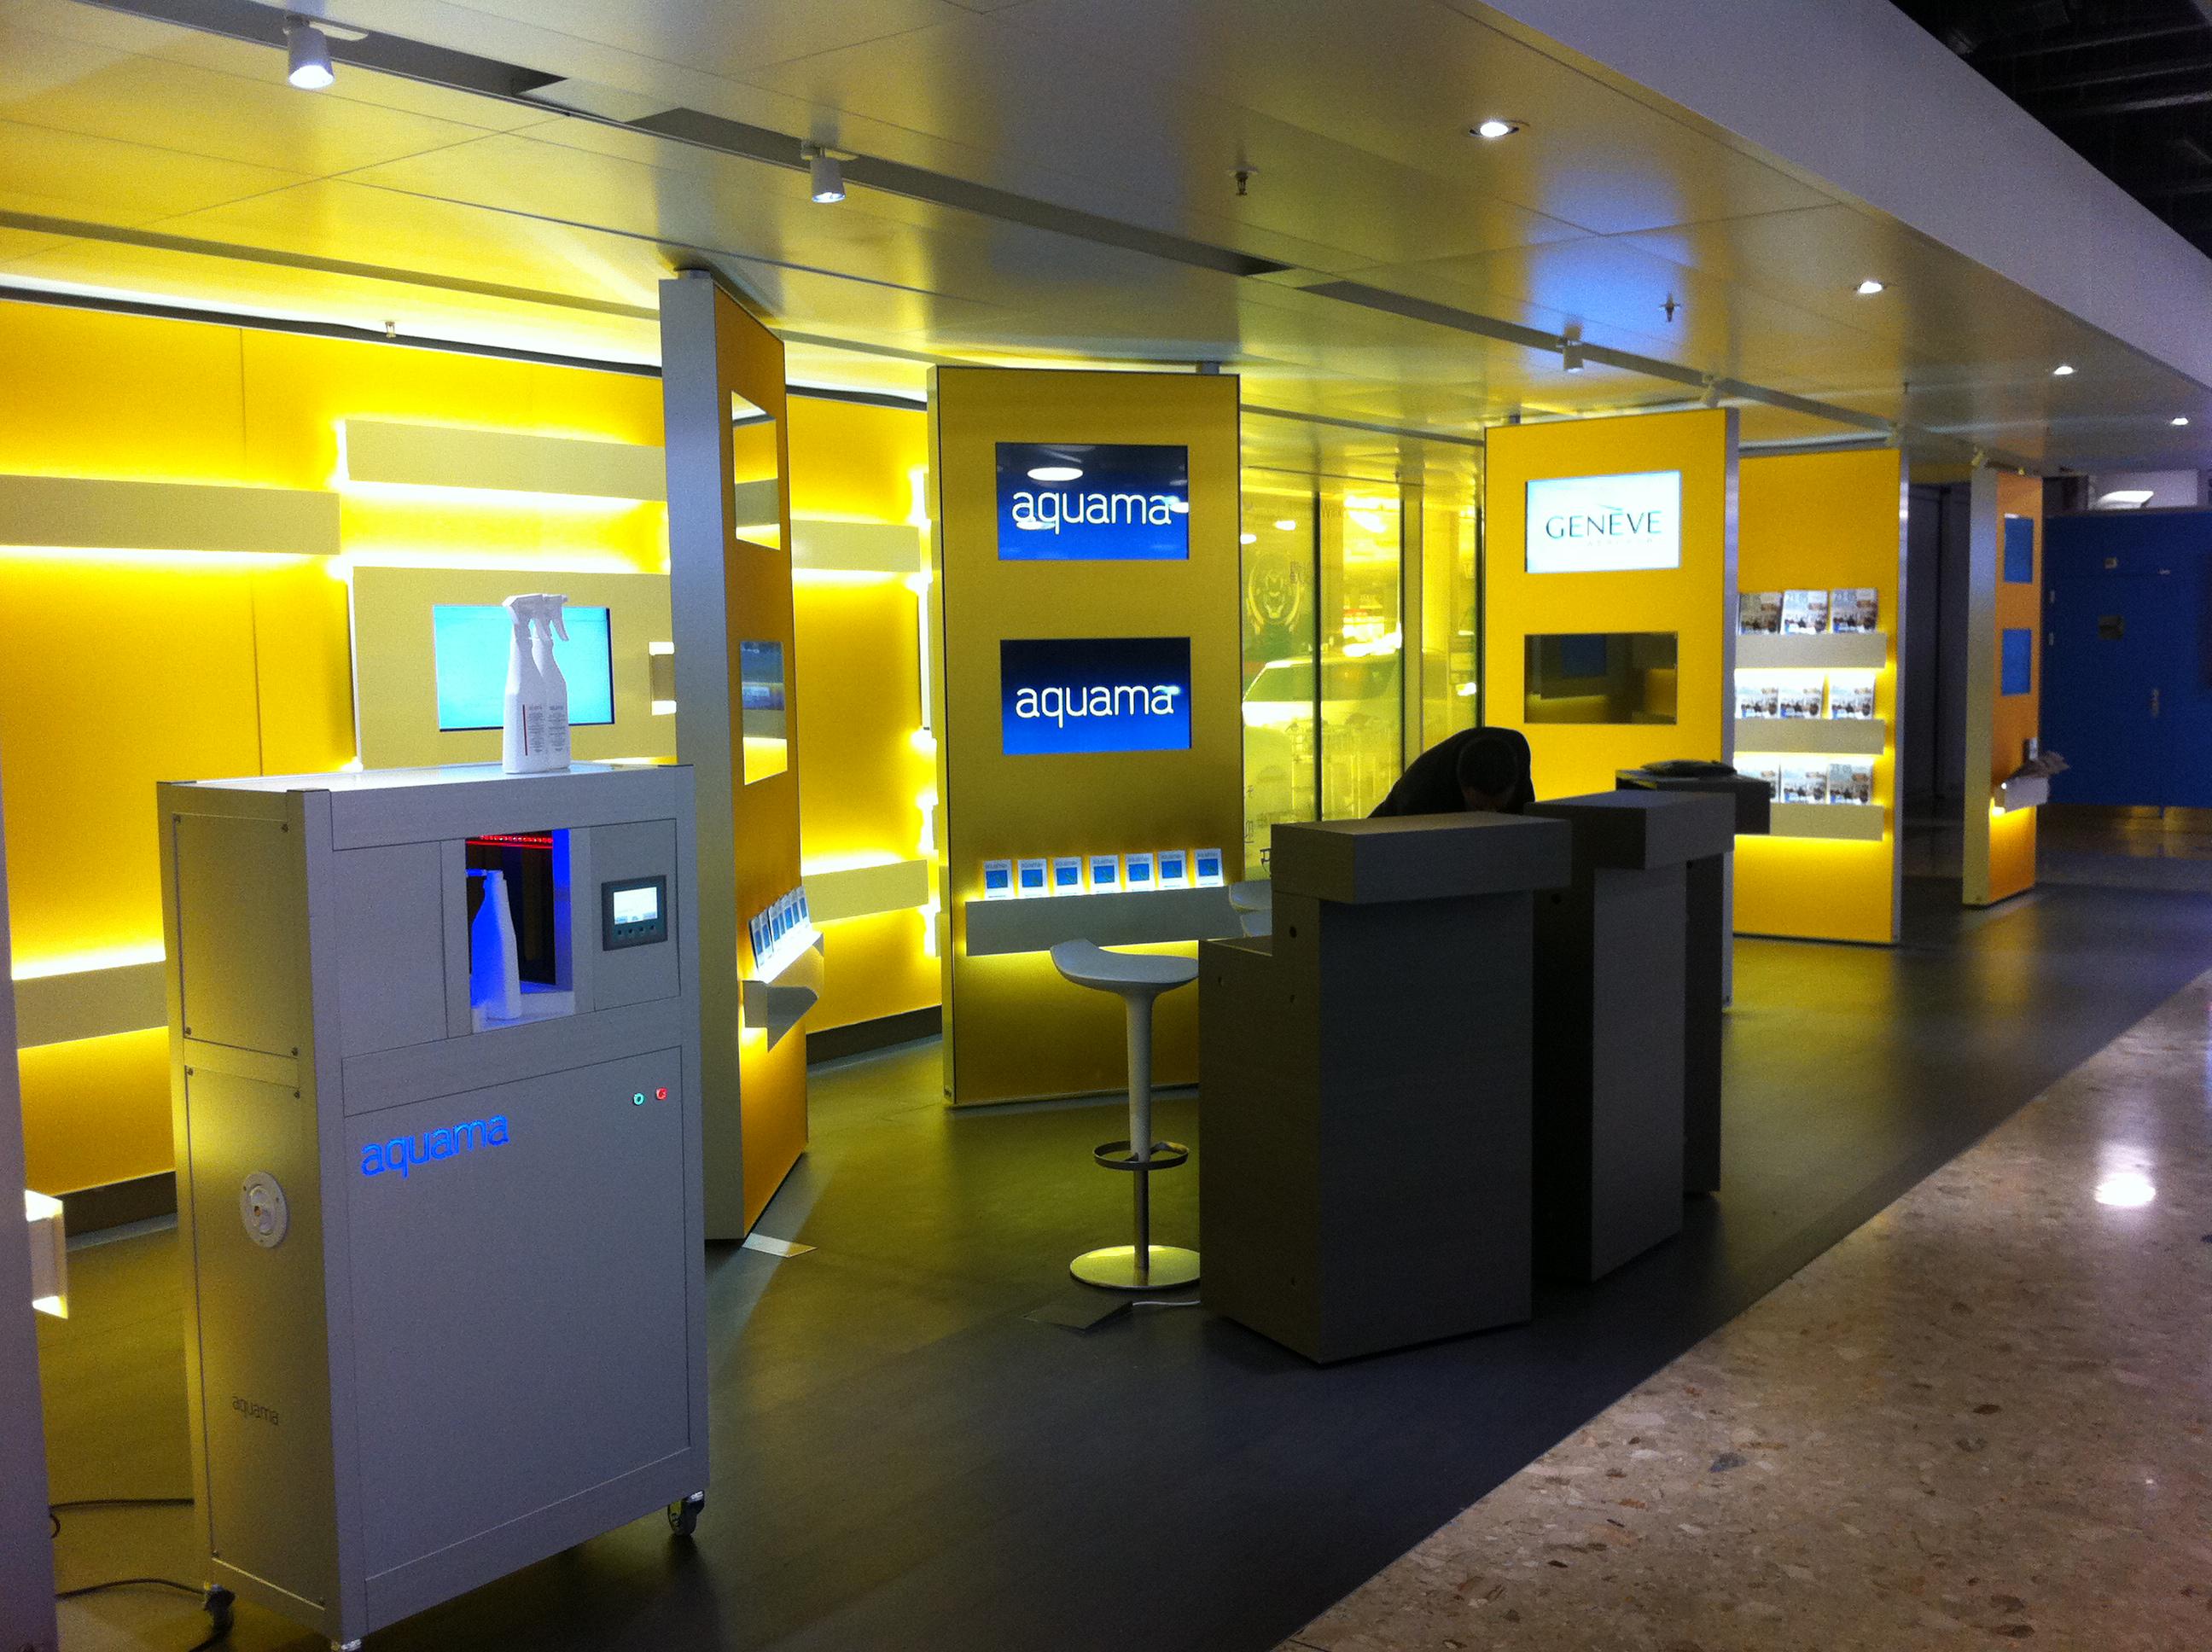 aquama displays on screen at Geneva Airport